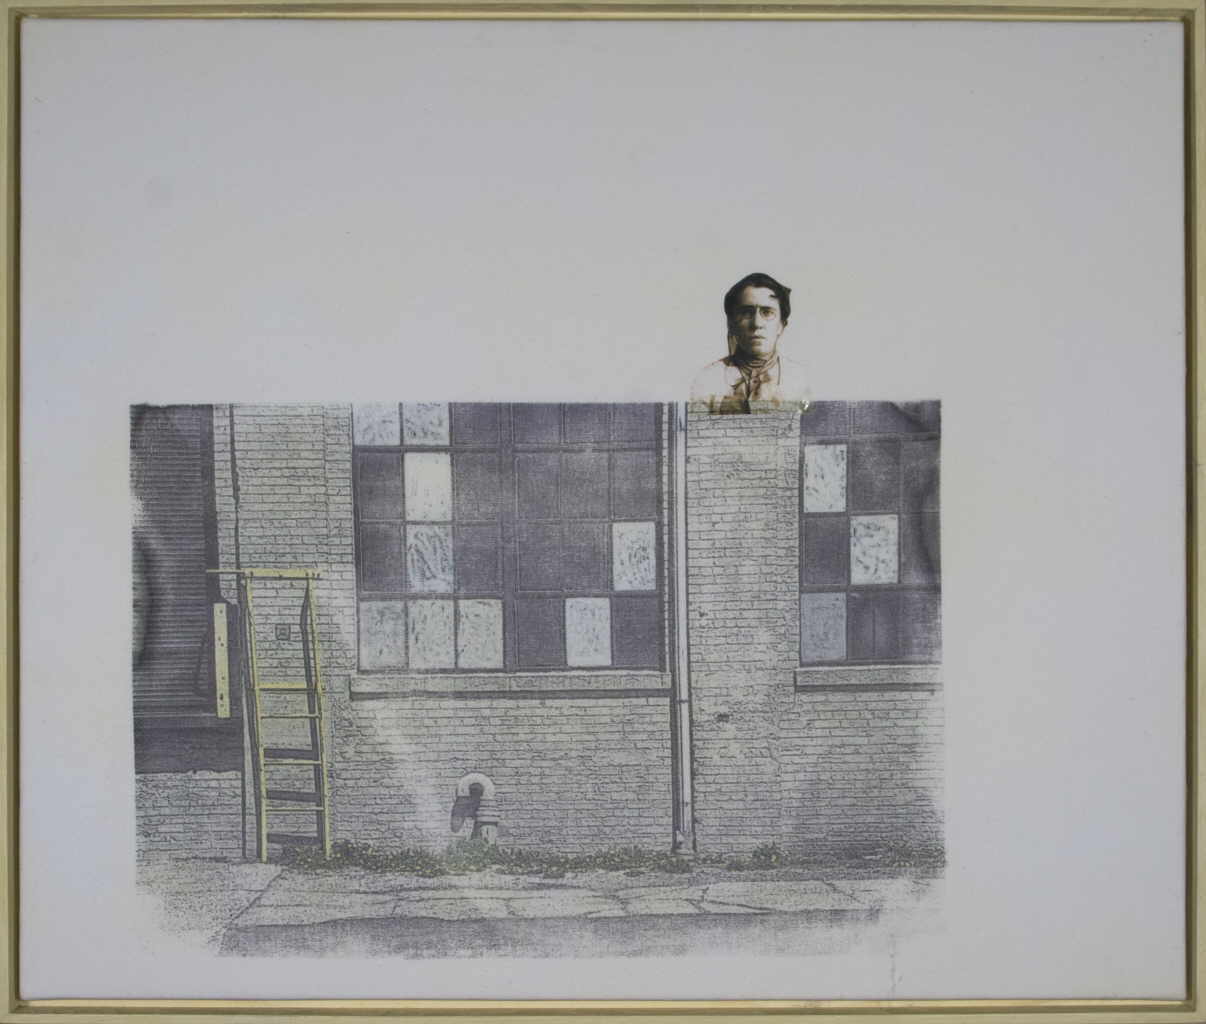 Zauner Christa 
"Escalator", 2004
Frottage / Canvas
50 x 60 cm